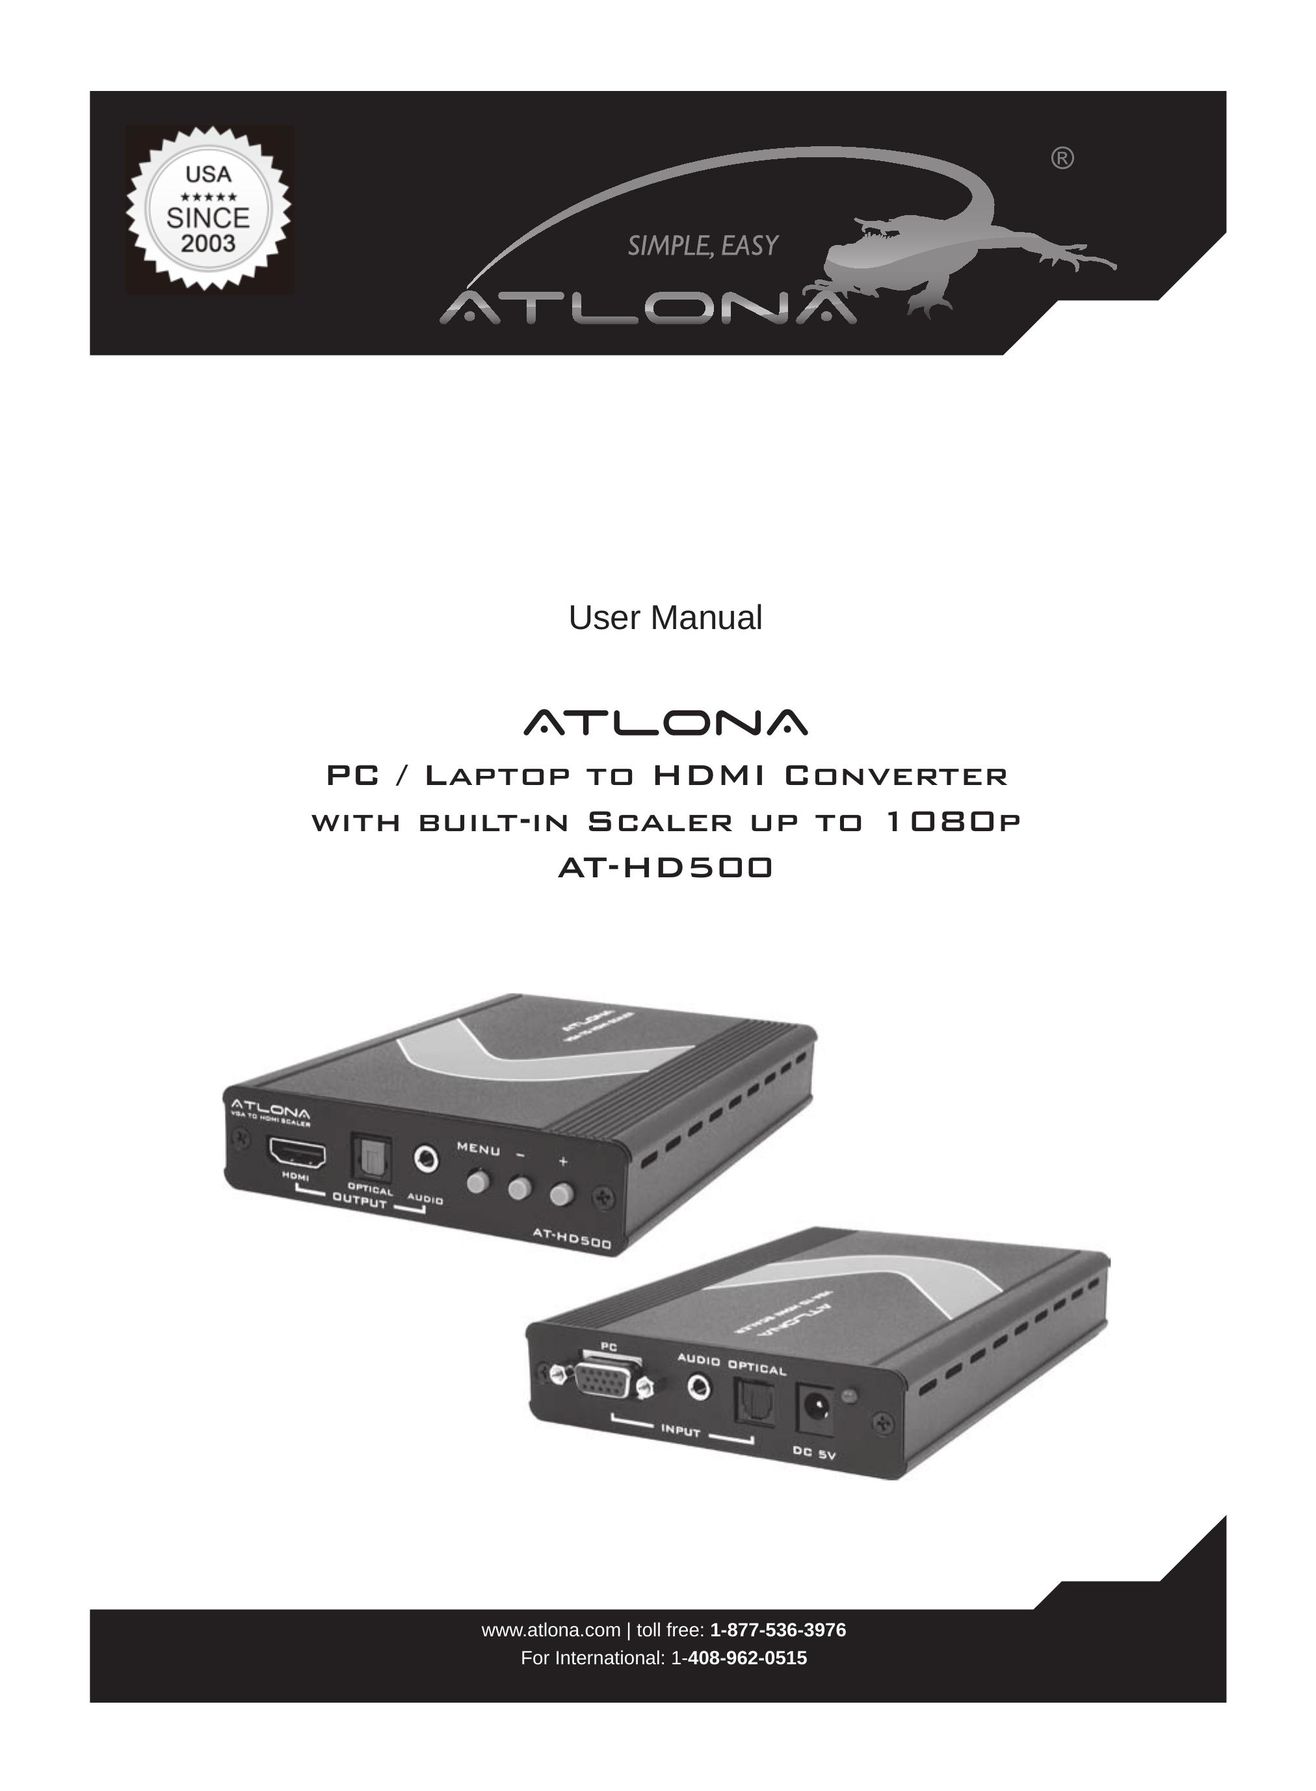 Atlona AT-HD500 TV Converter Box User Manual